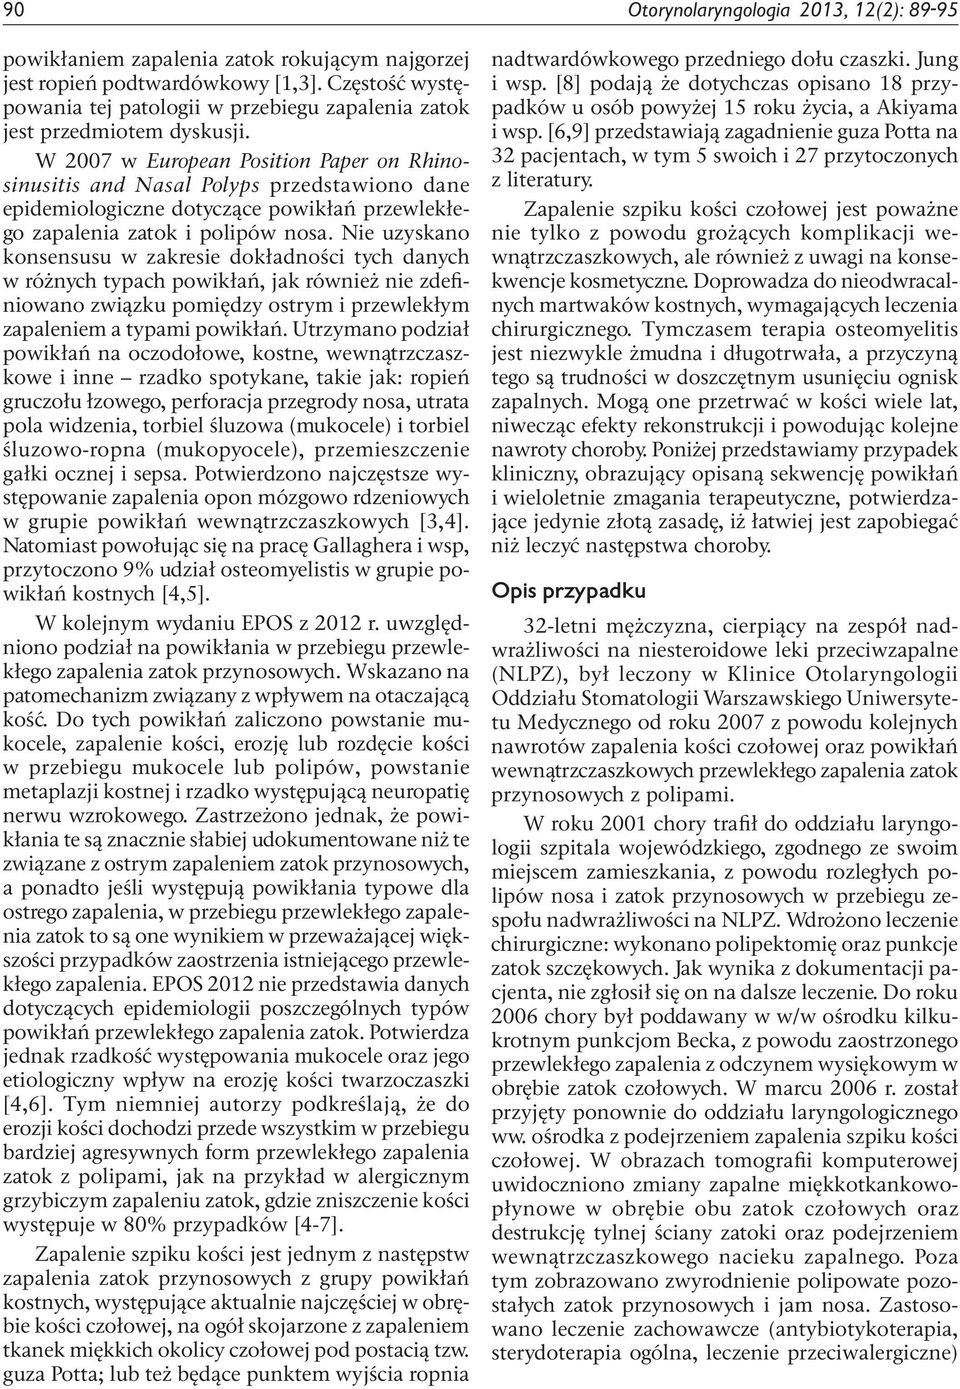 W 2007 w European Position Paper on Rhinosinusitis and Nasal Polyps przedstawiono dane epidemiologiczne dotyczące powikłań przewlekłego zapalenia zatok i polipów nosa.